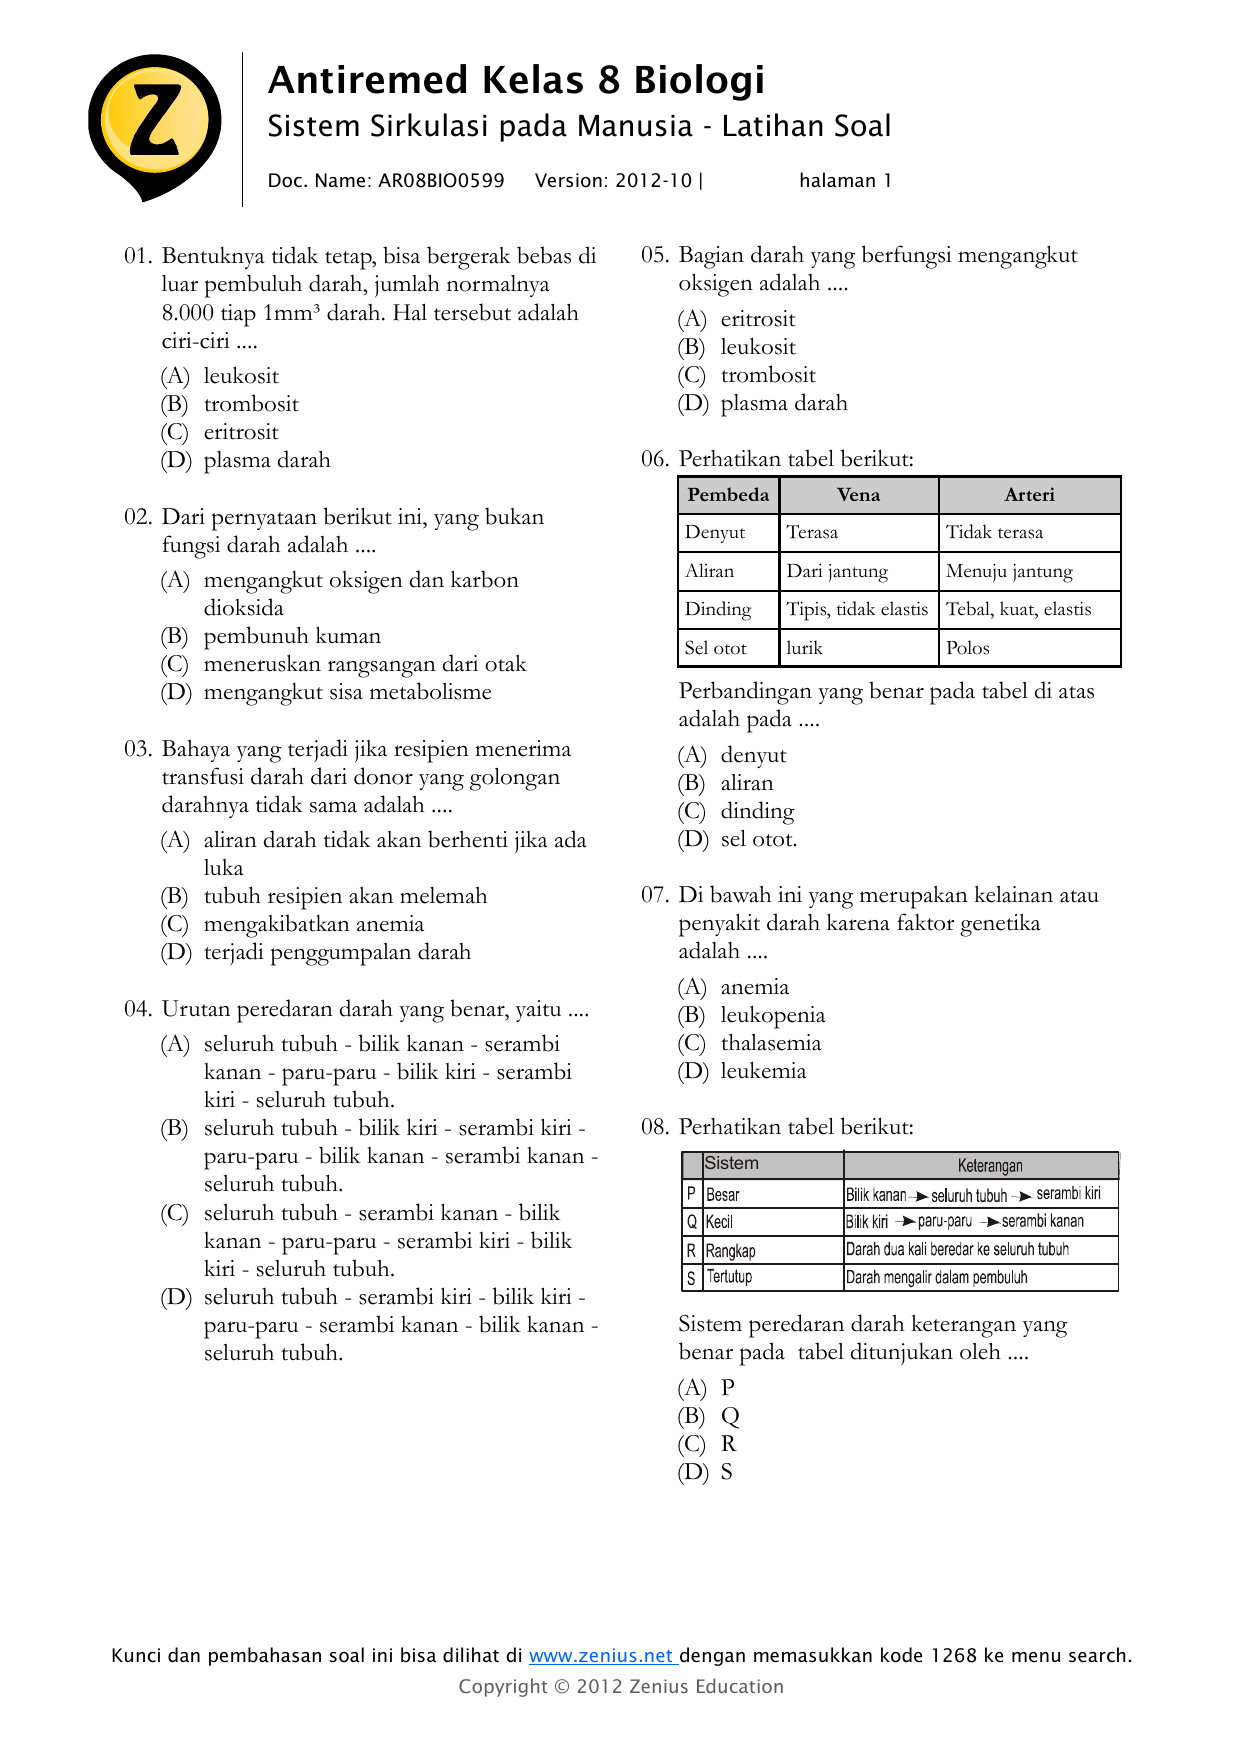 Antiremed Kelas 8 Biologi Sistem Sirkulasi pada Manusia Latihan Soal Doc Name AR08BIO0599 Version 2012 10